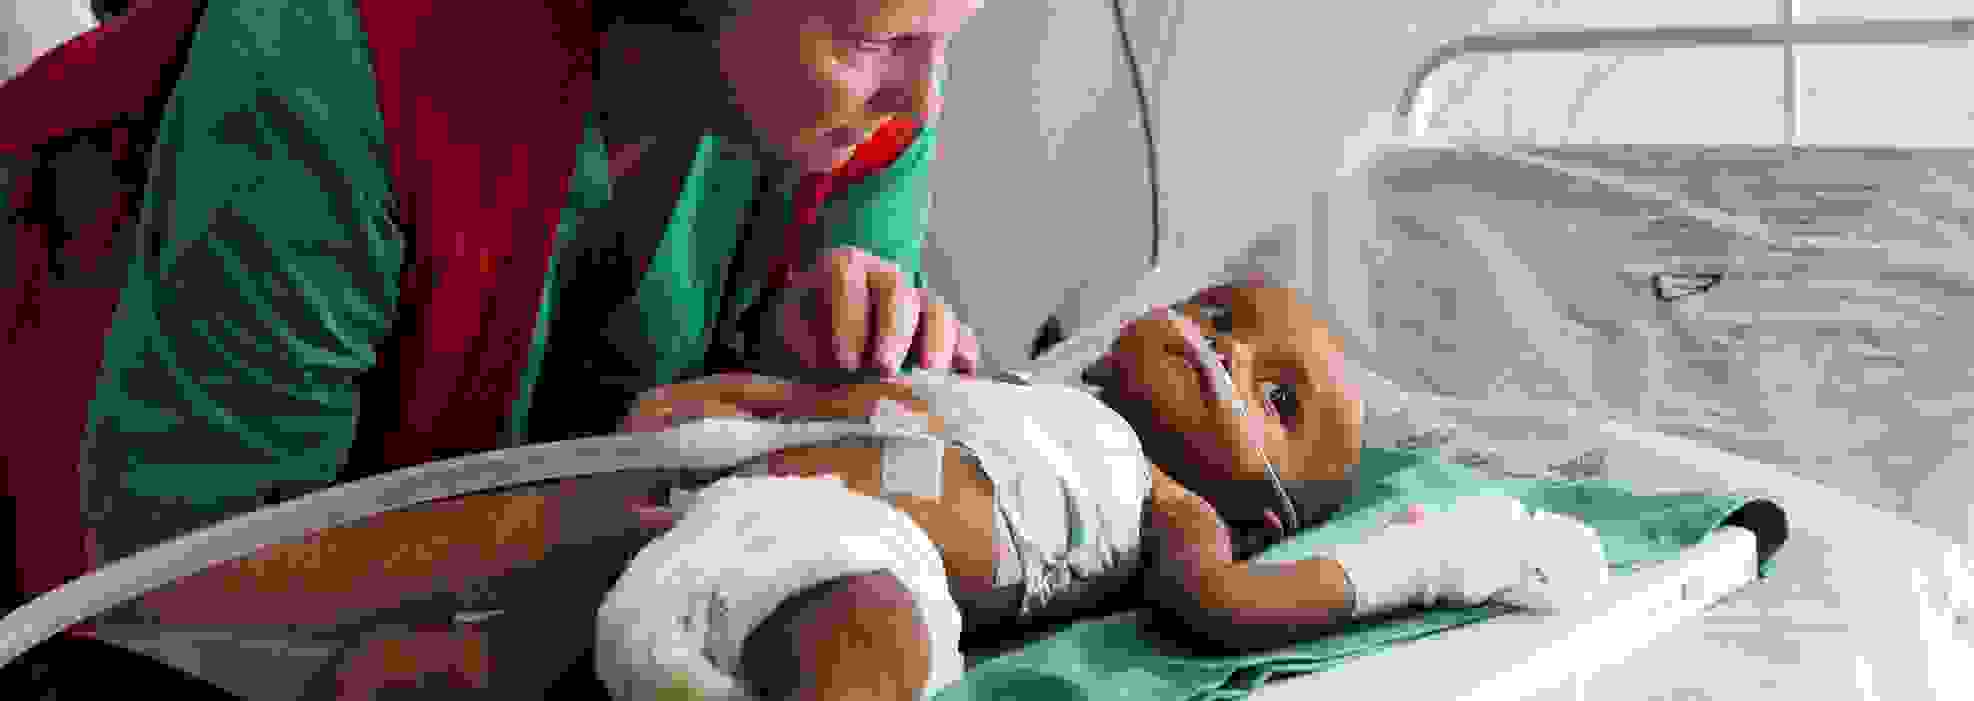 En av Röda Korsets biståndsarbetare tar hand om ett spädbarn på ett fältsjukhus.